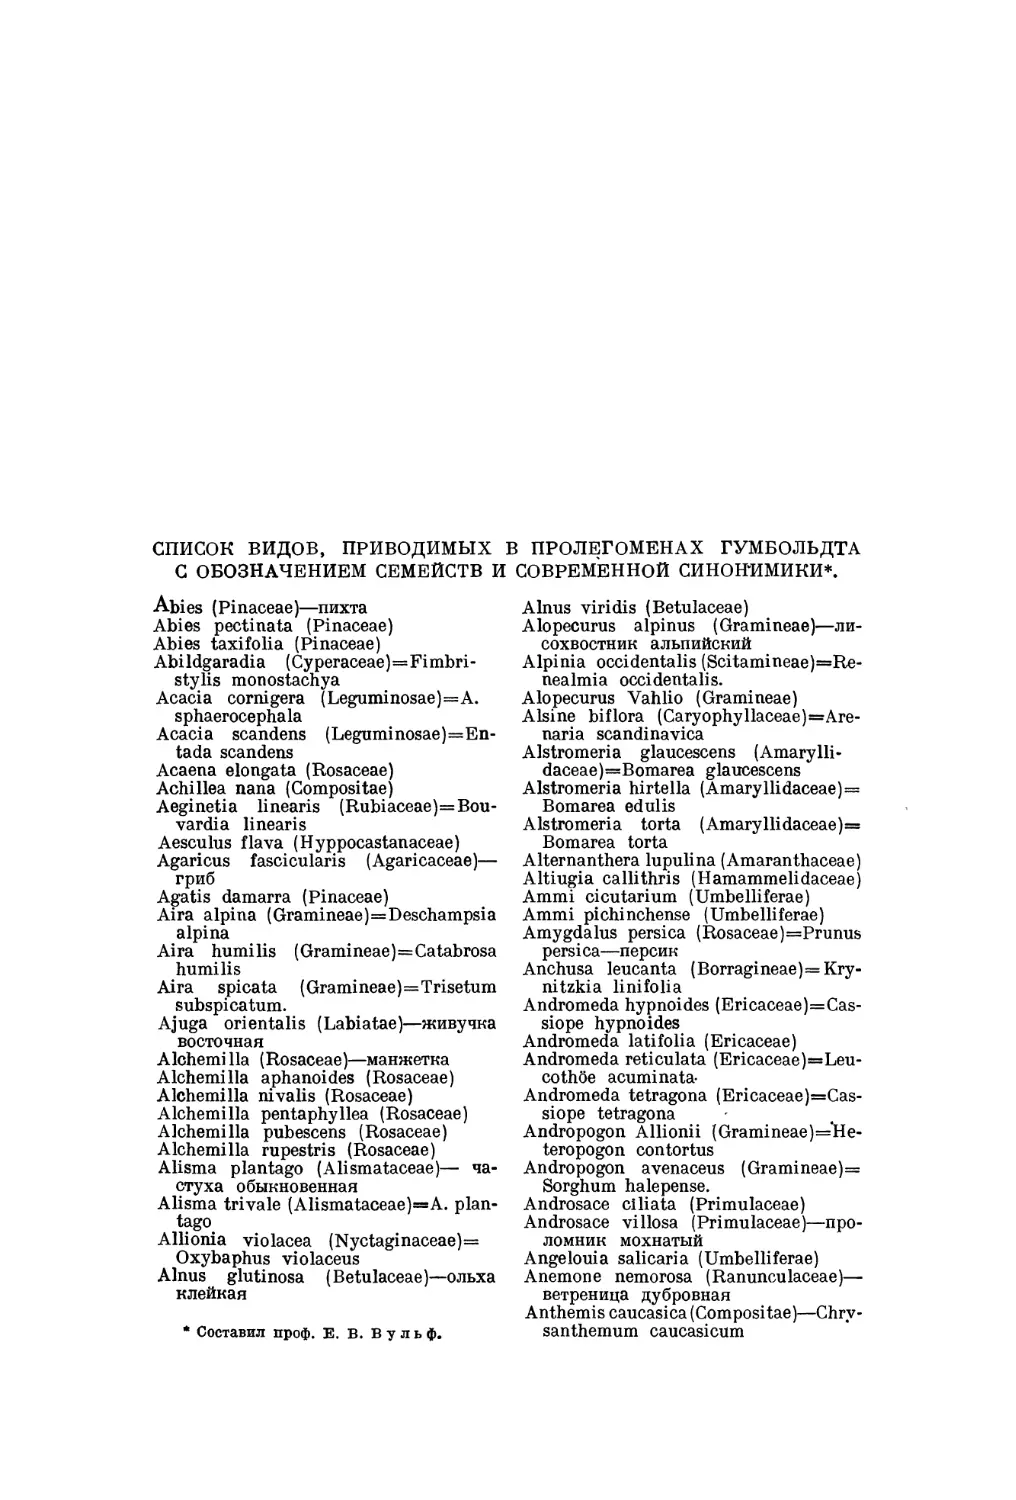 Список видов, приводимых в пролегоменах Гумбольдта, с обозначением семейств и современной синонимики — Е.В. Вульф